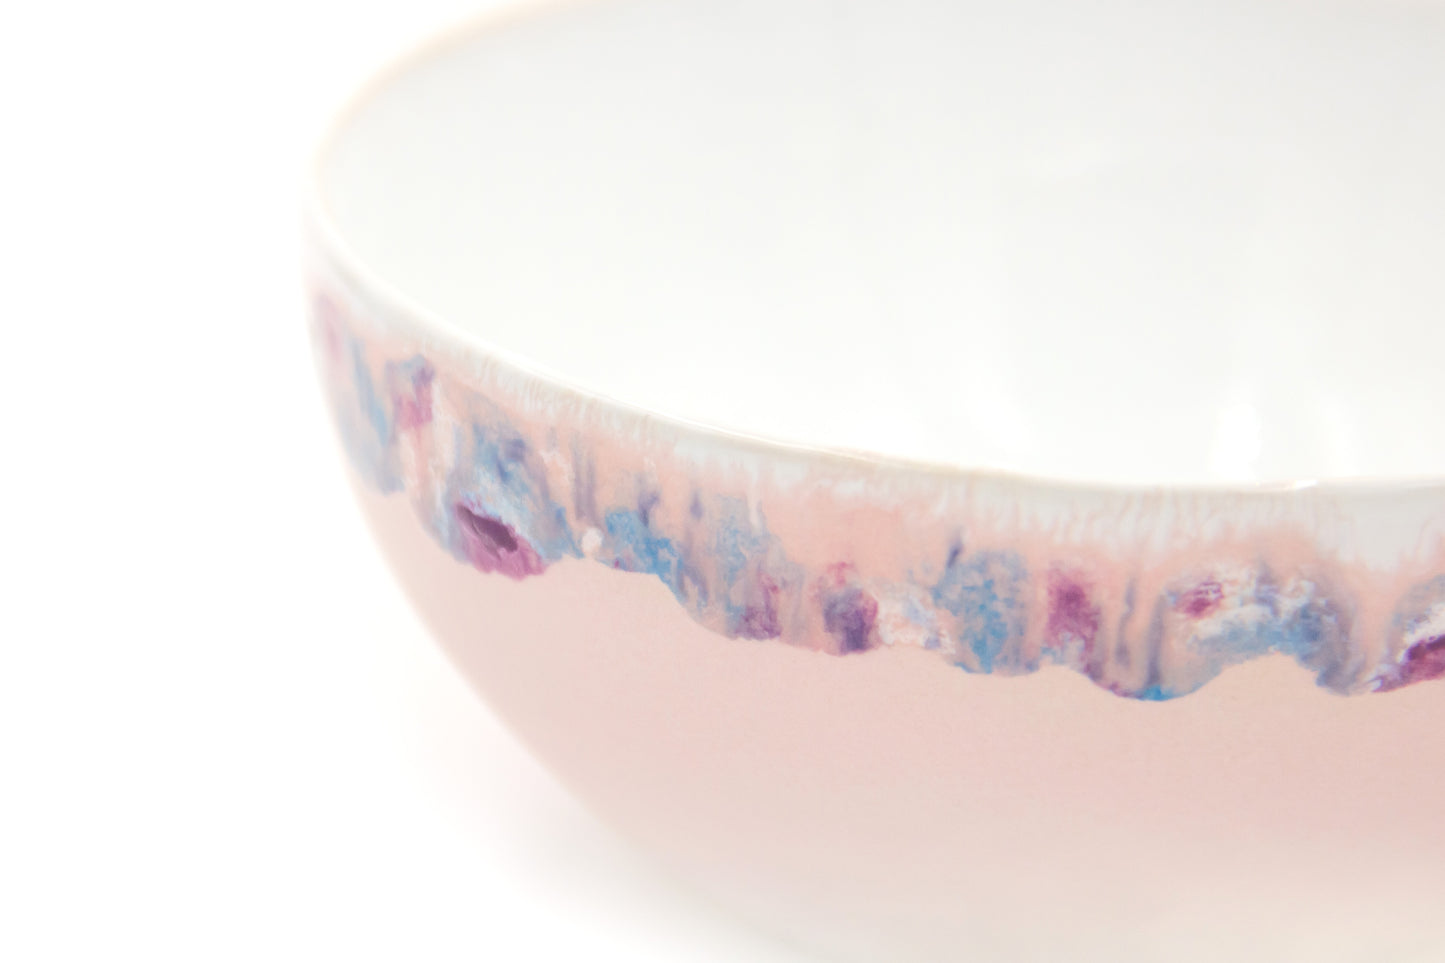 Miseczka ceramiczna w kolorze biało-różowym